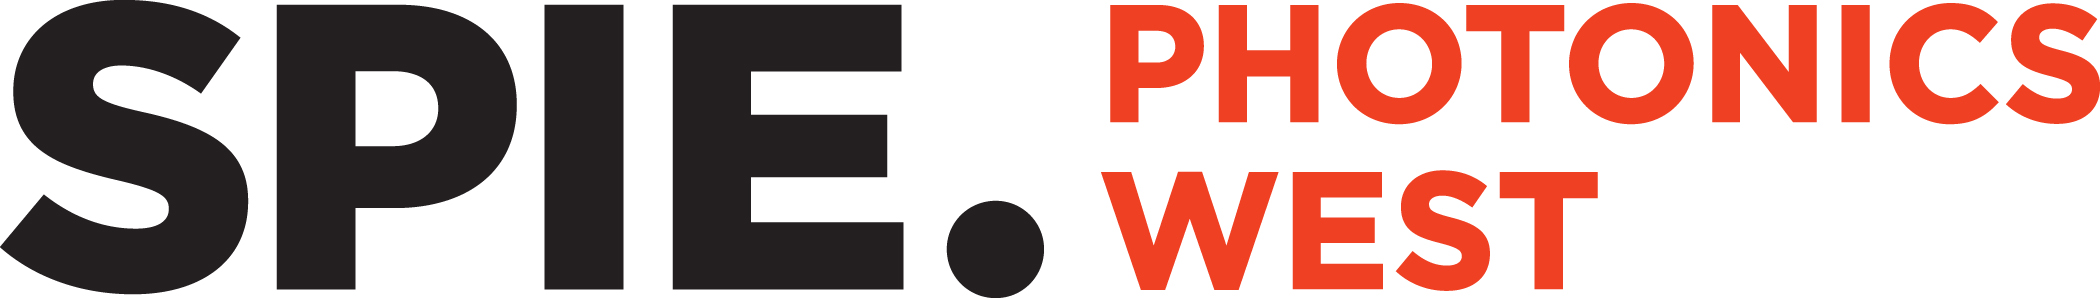 Photonics West 2019 展示会情報―ベアチップの紹介―